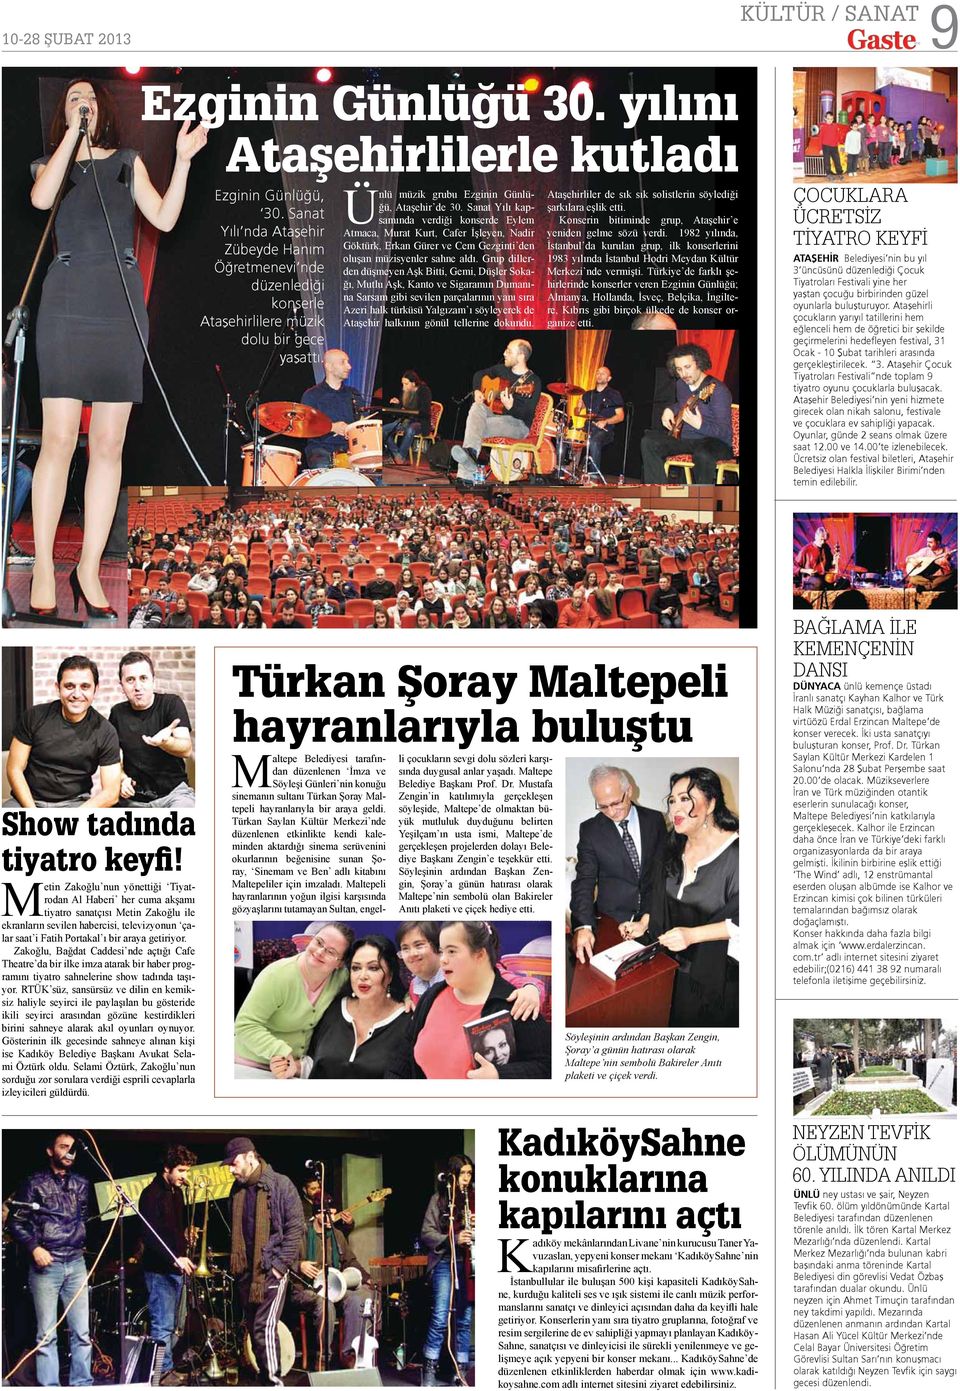 Sanat Yılı kapsamında verdiği konserde Eylem Atmaca, Murat Kurt, Cafer İşleyen, Nadir Göktürk, Erkan Gürer ve Cem Gezginti den oluşan müzisyenler sahne aldı.